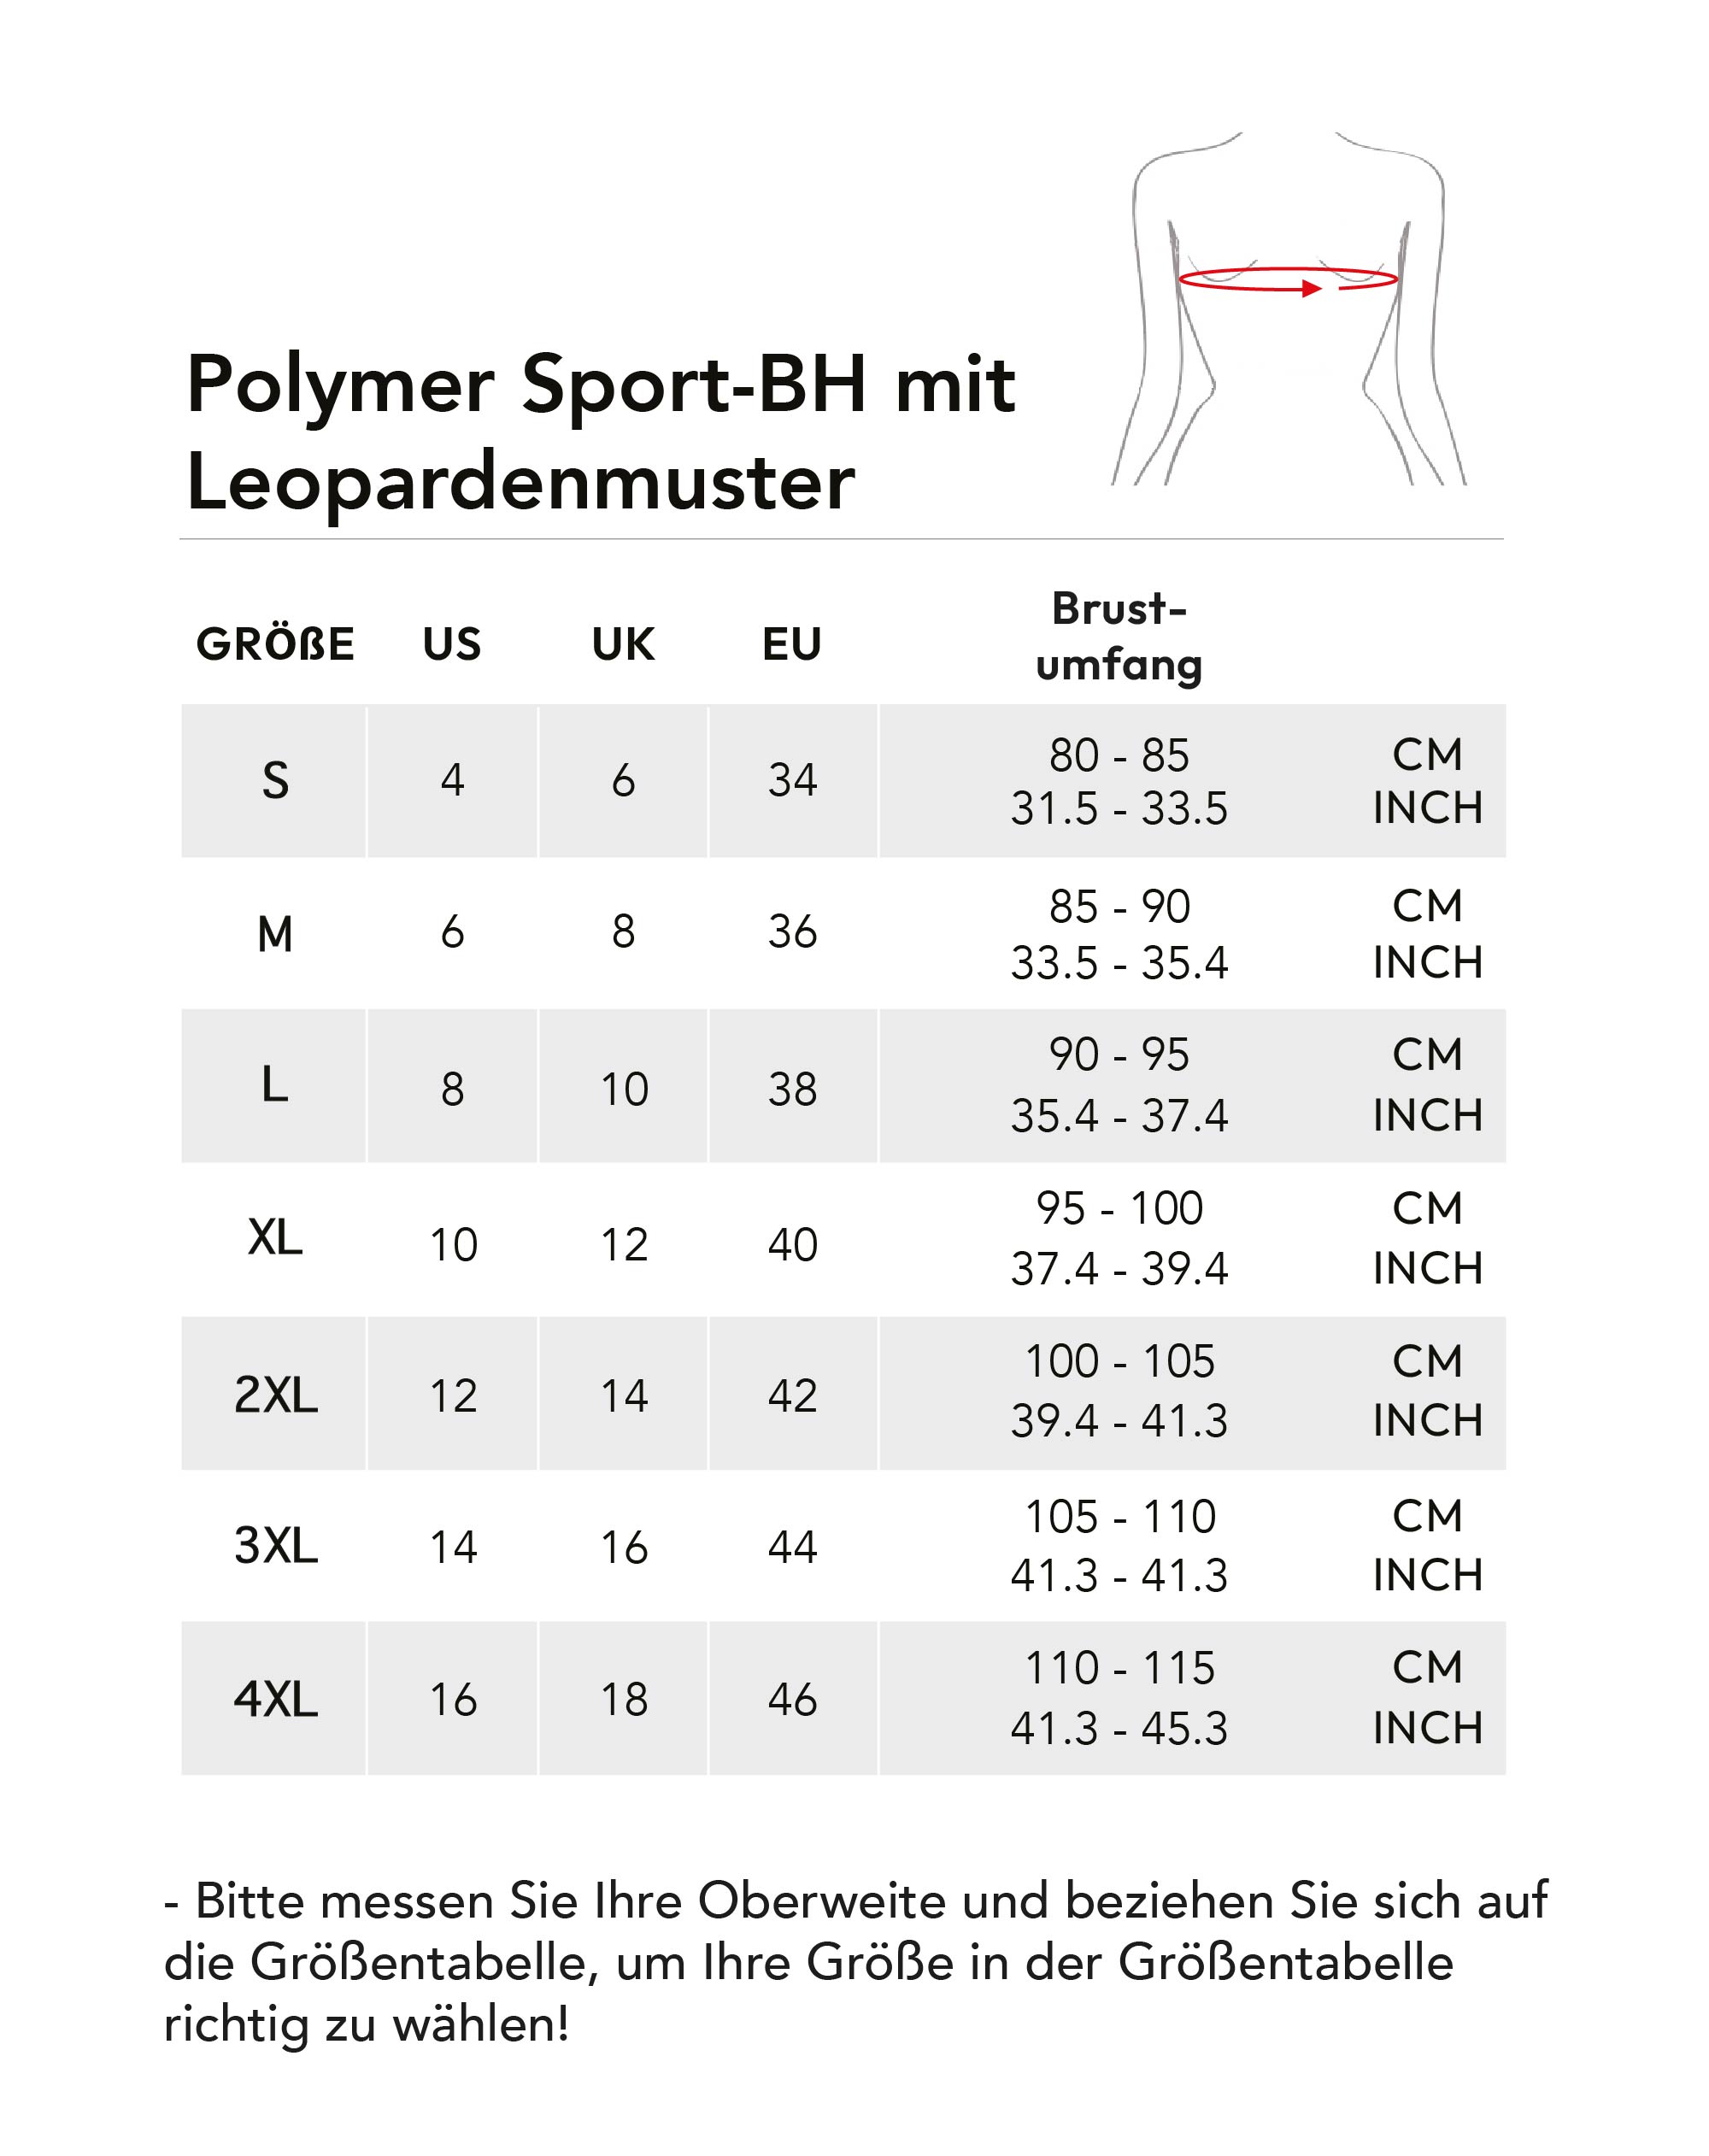 polymer-sport-bh-mit-leopardenmuster.jpg (243 KB)